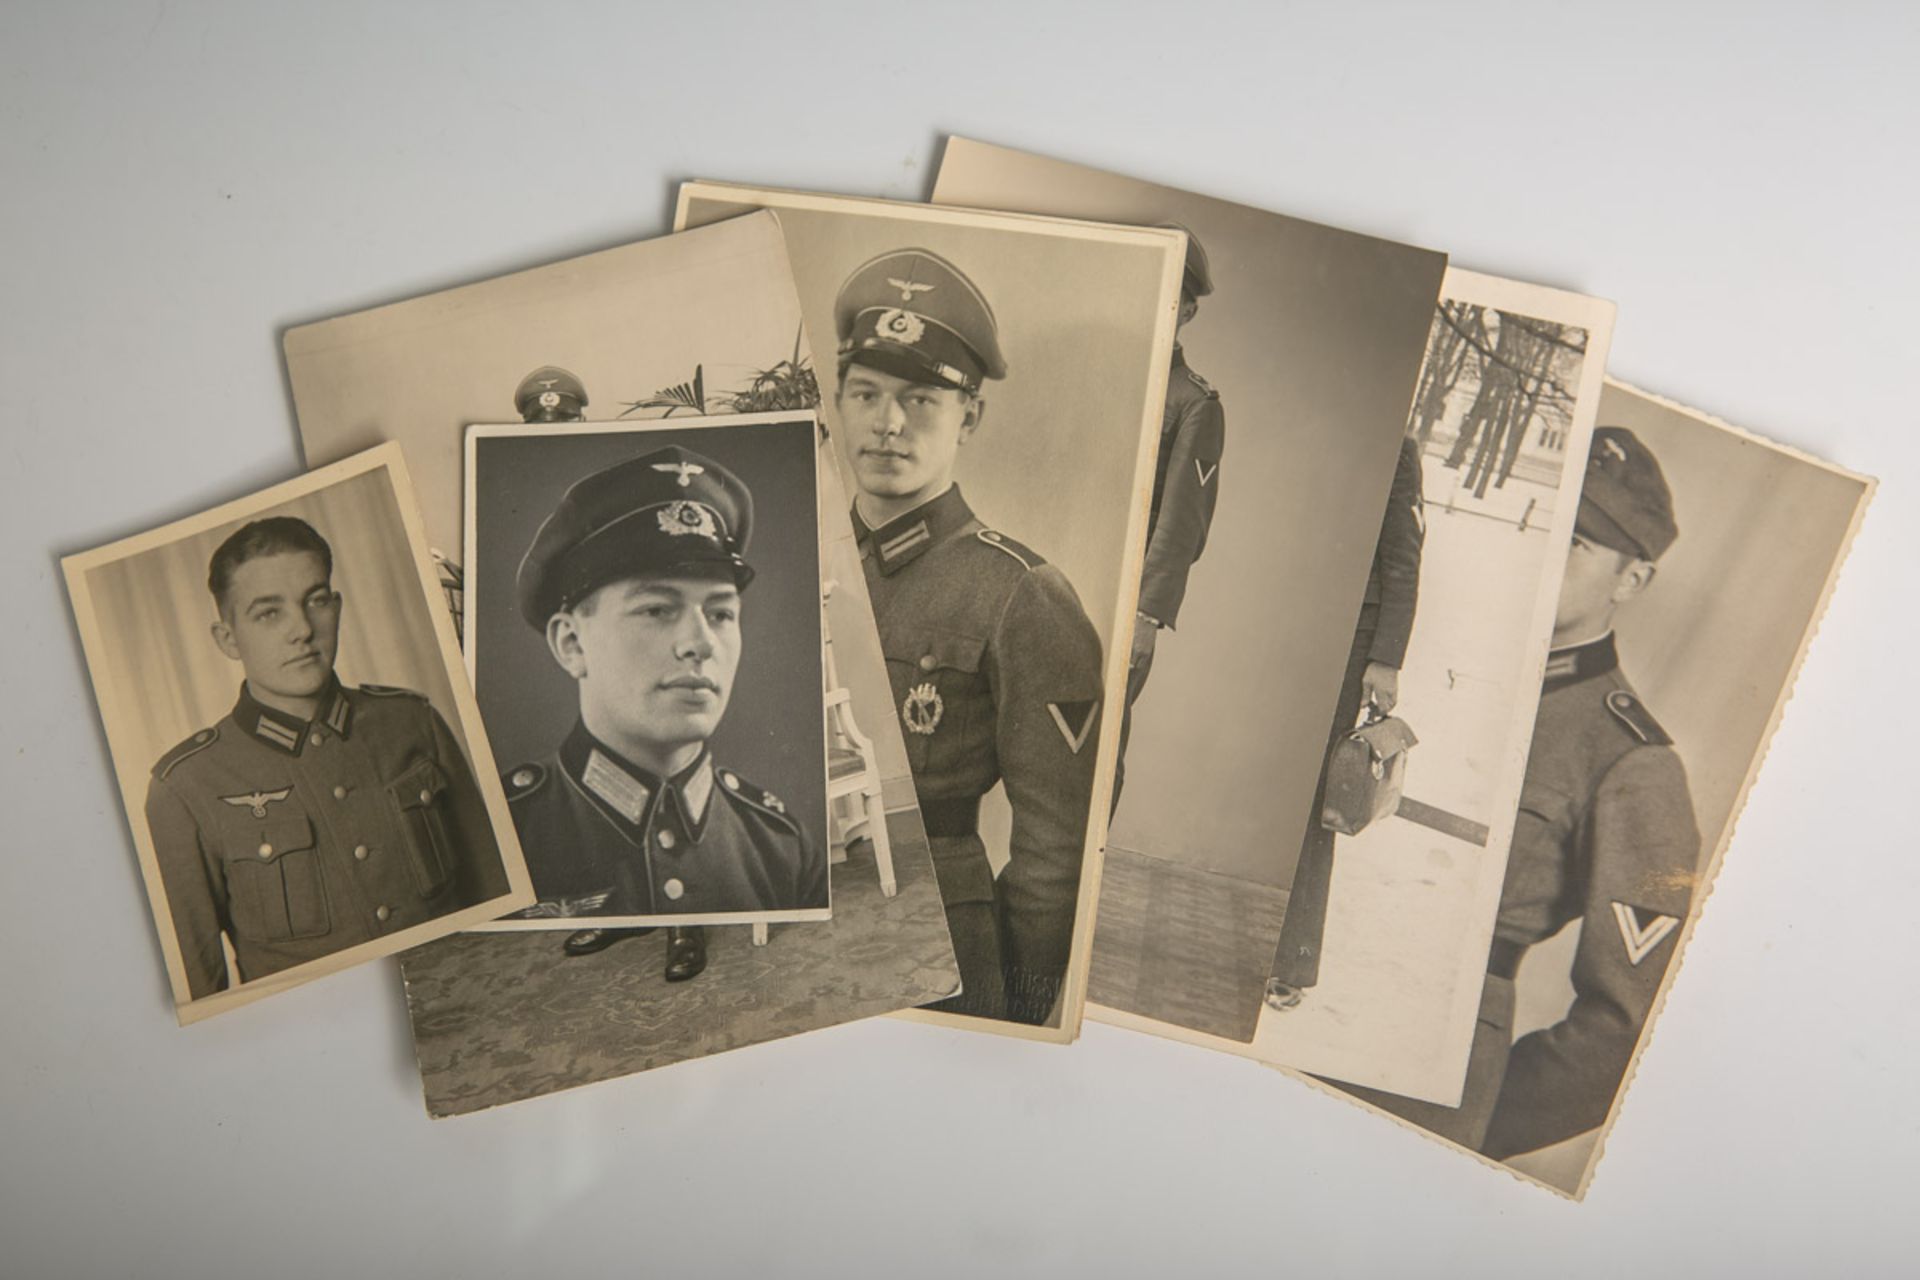 Konvolut von Fotoaufnahmen (2. WK), Drittes Reich, 8 Stück, davon 6 Fotoaufnahmen von